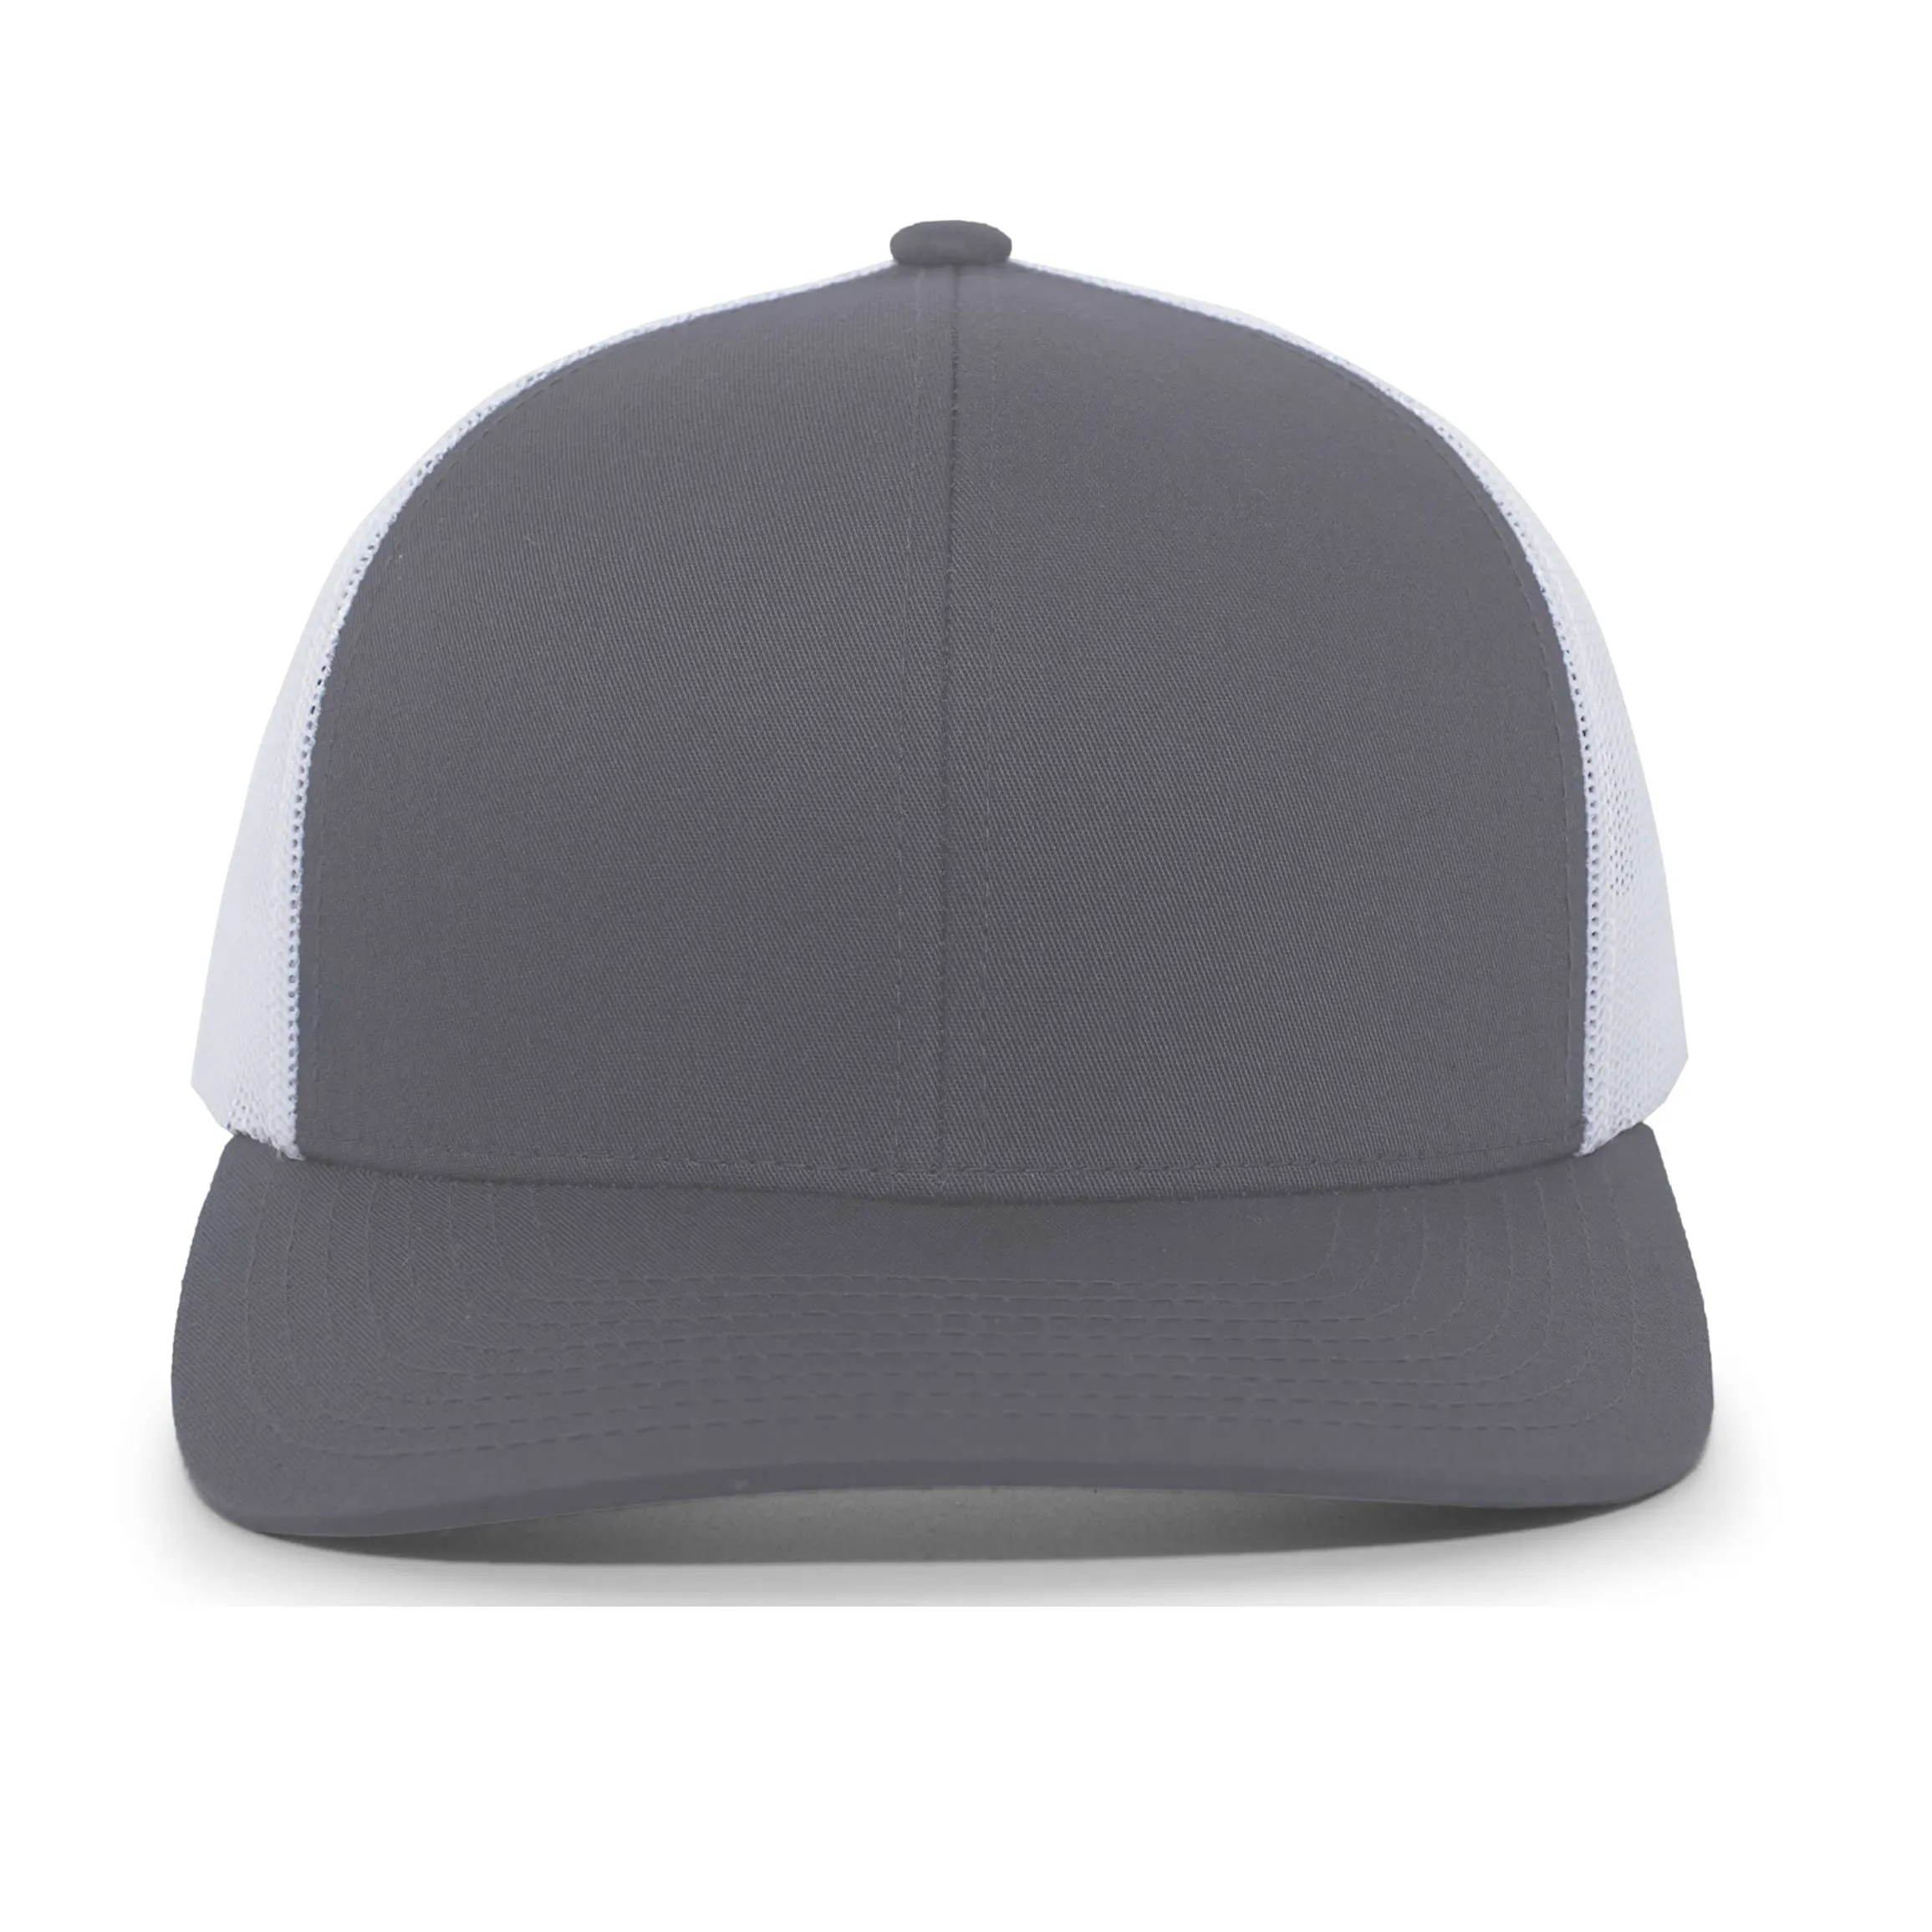 100% 면 스포츠 컴포트 야구 모자 남성 전문 디자인 사용자 정의 빈 조정 가능한 남녀 공용 야구 모자